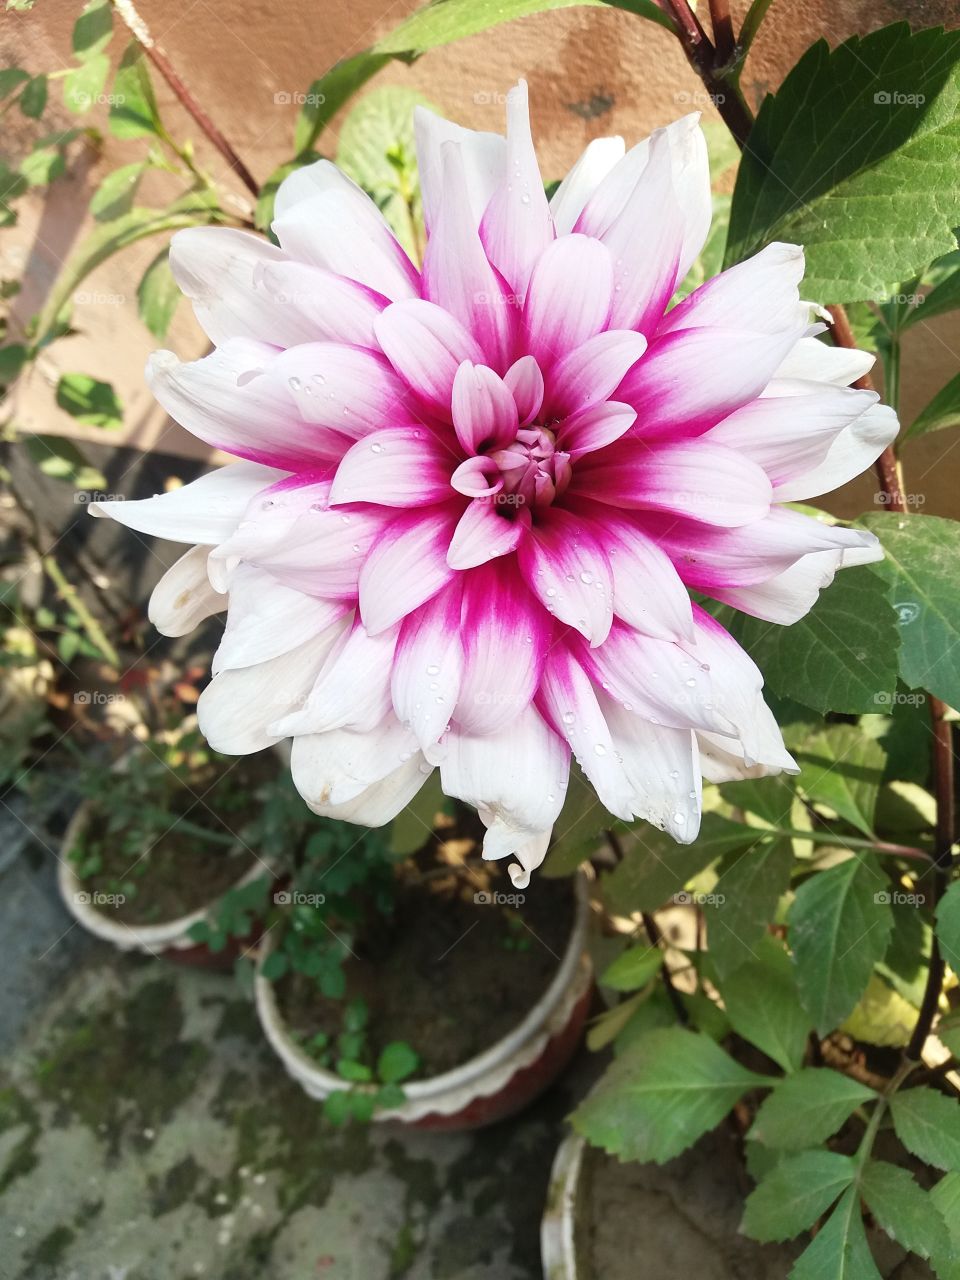 flower in bd